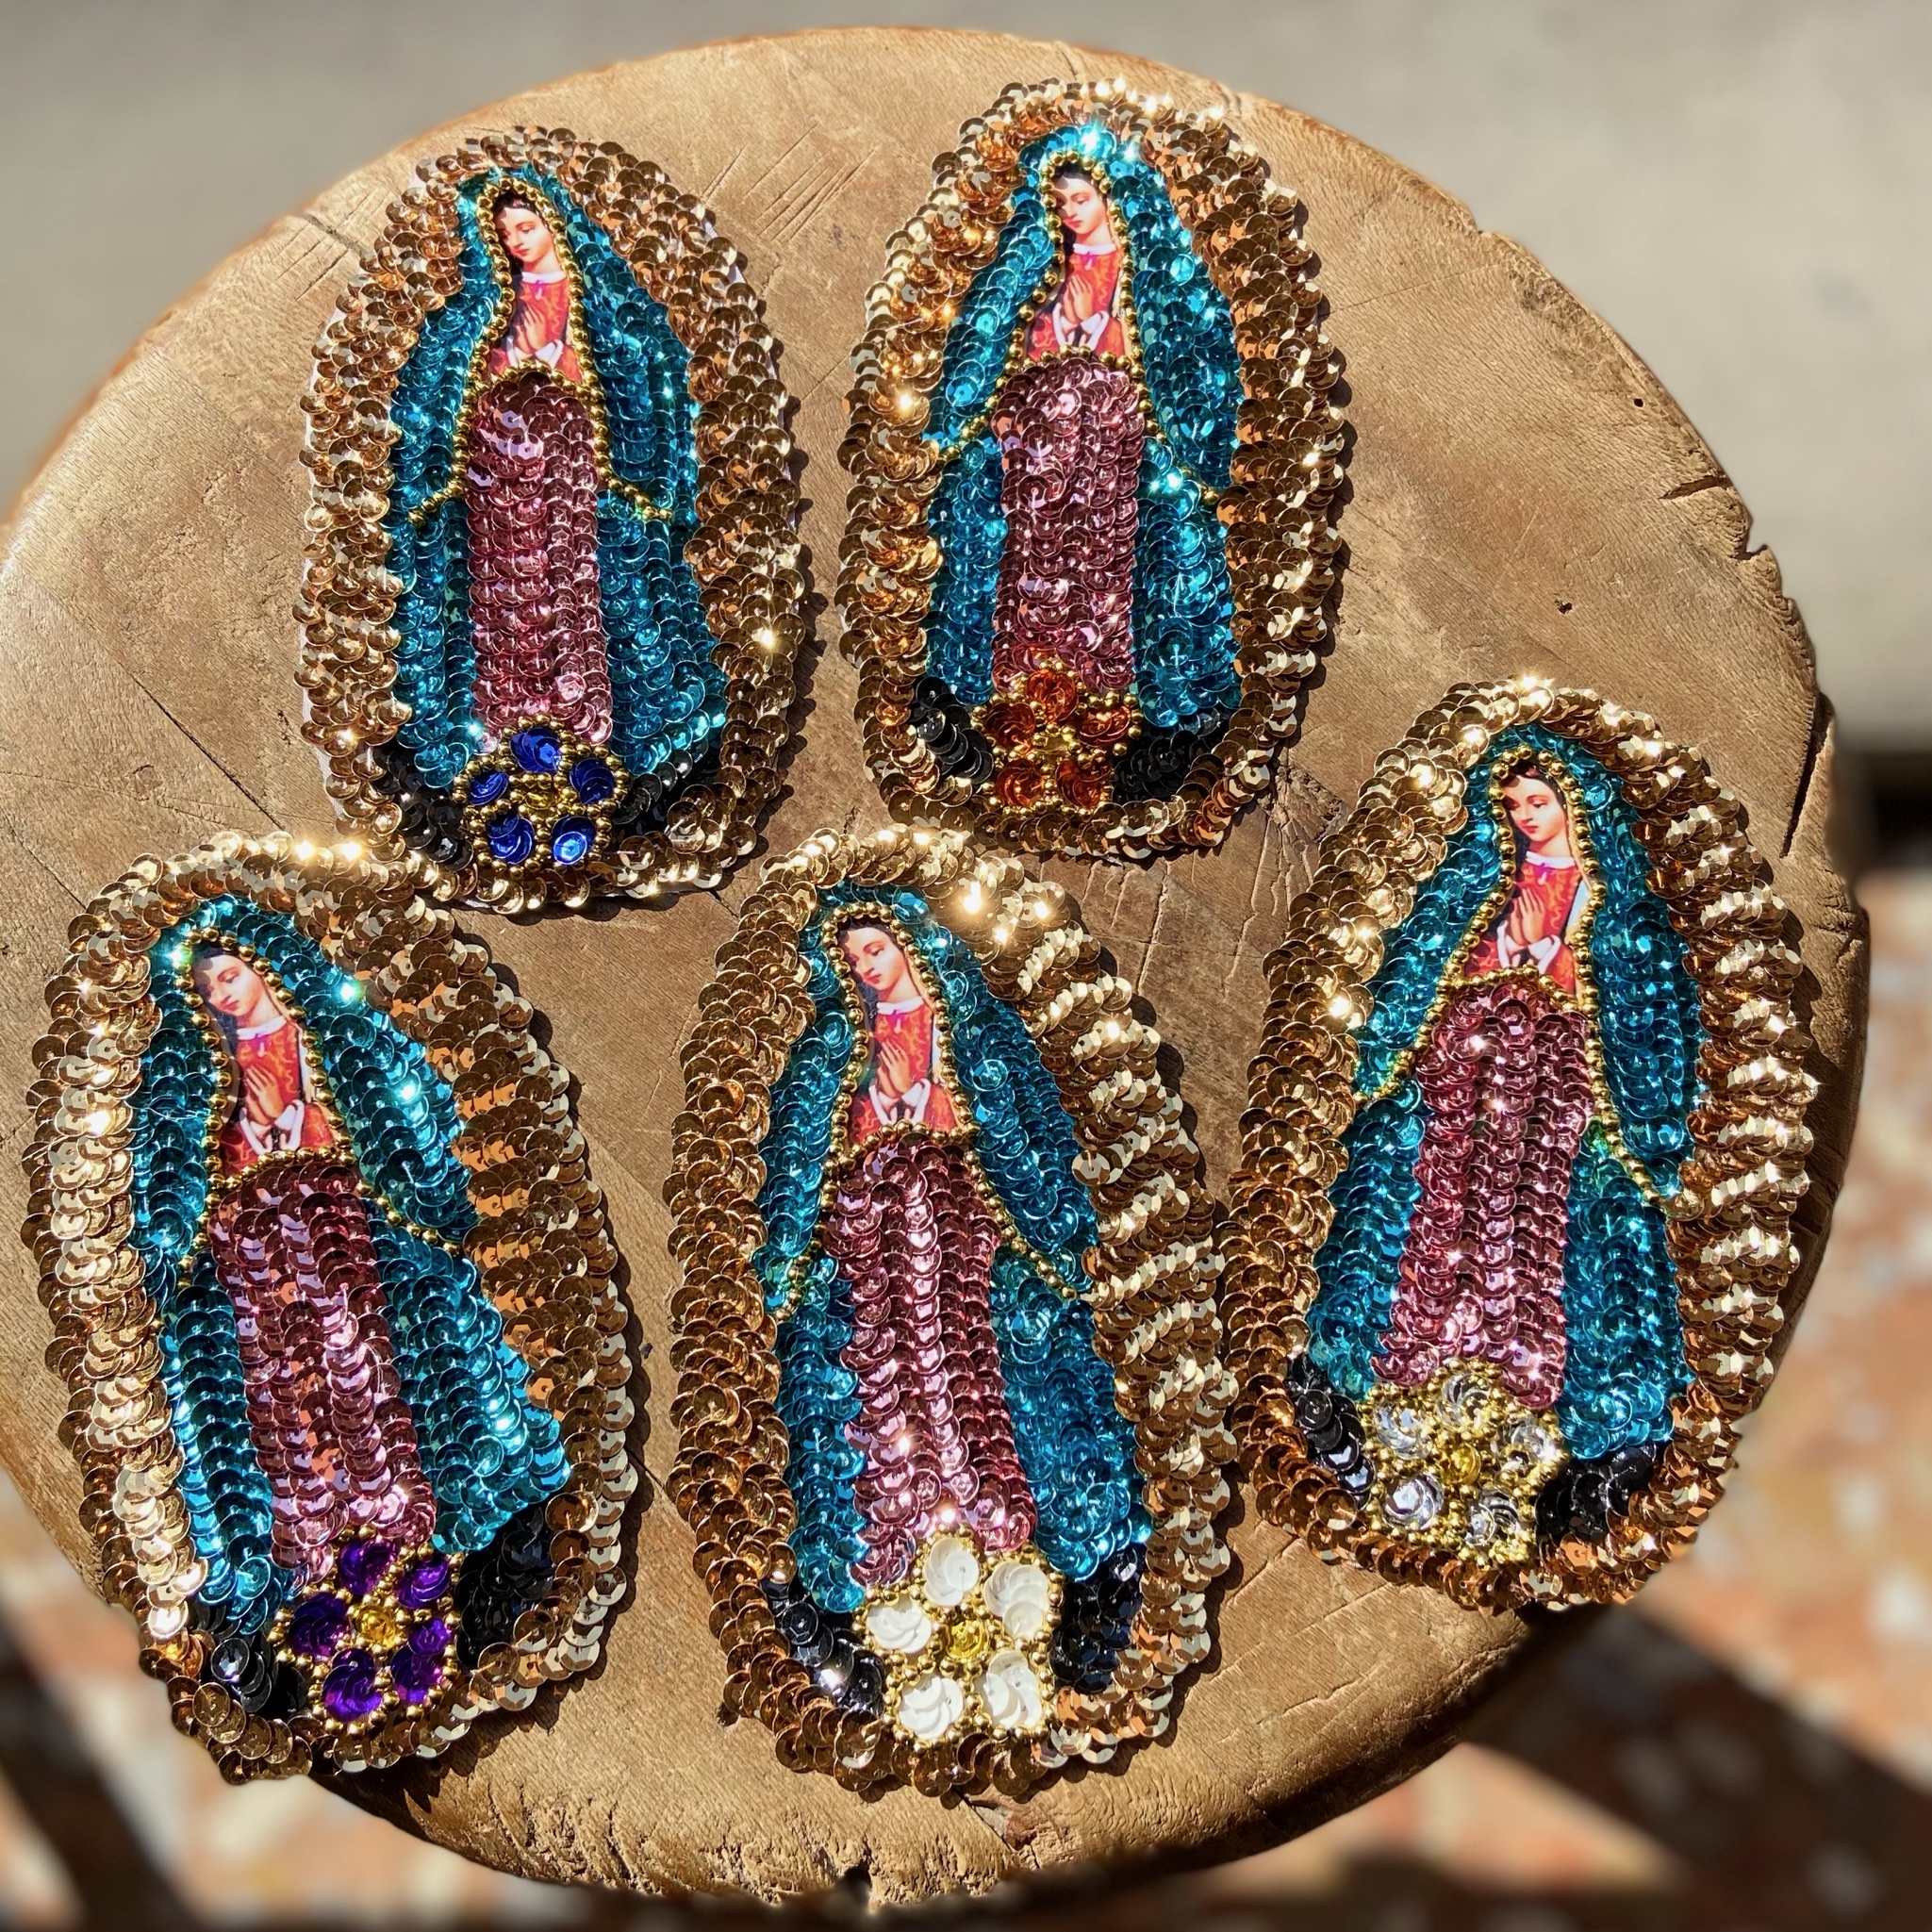 applicazioni della madonna della guadalupe con colori e paillettes